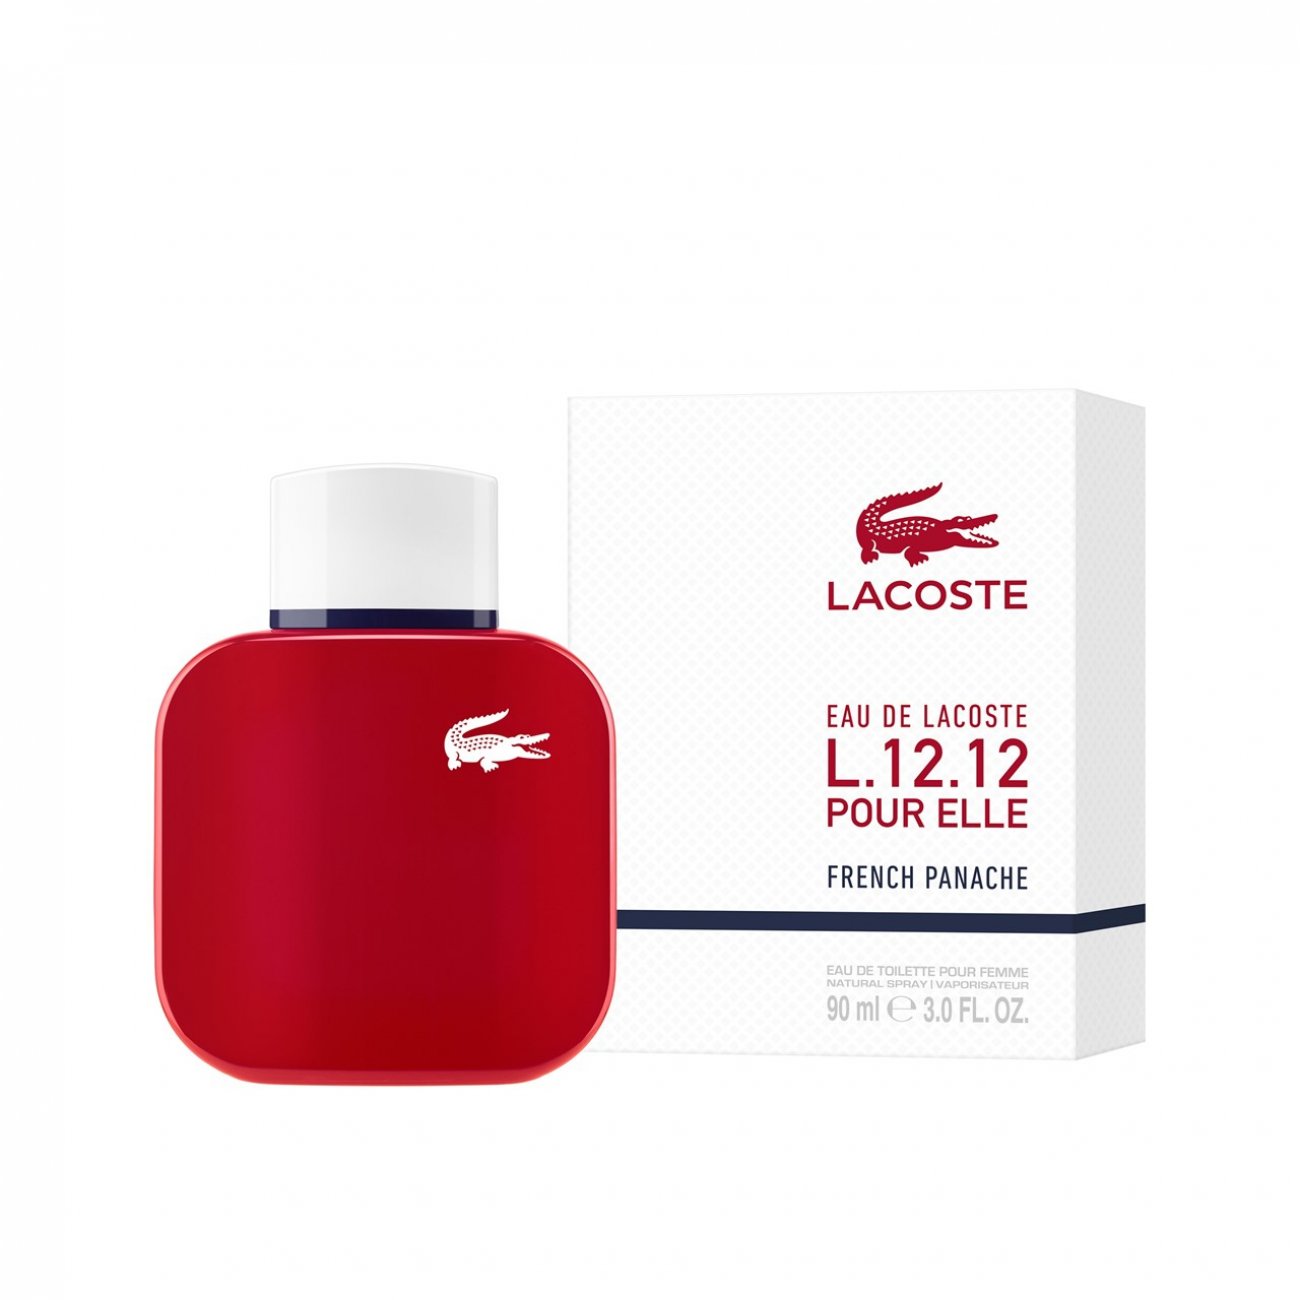 Buy Lacoste L.12.12 Elle French Panache de Toilette (3.0fl oz) · USA